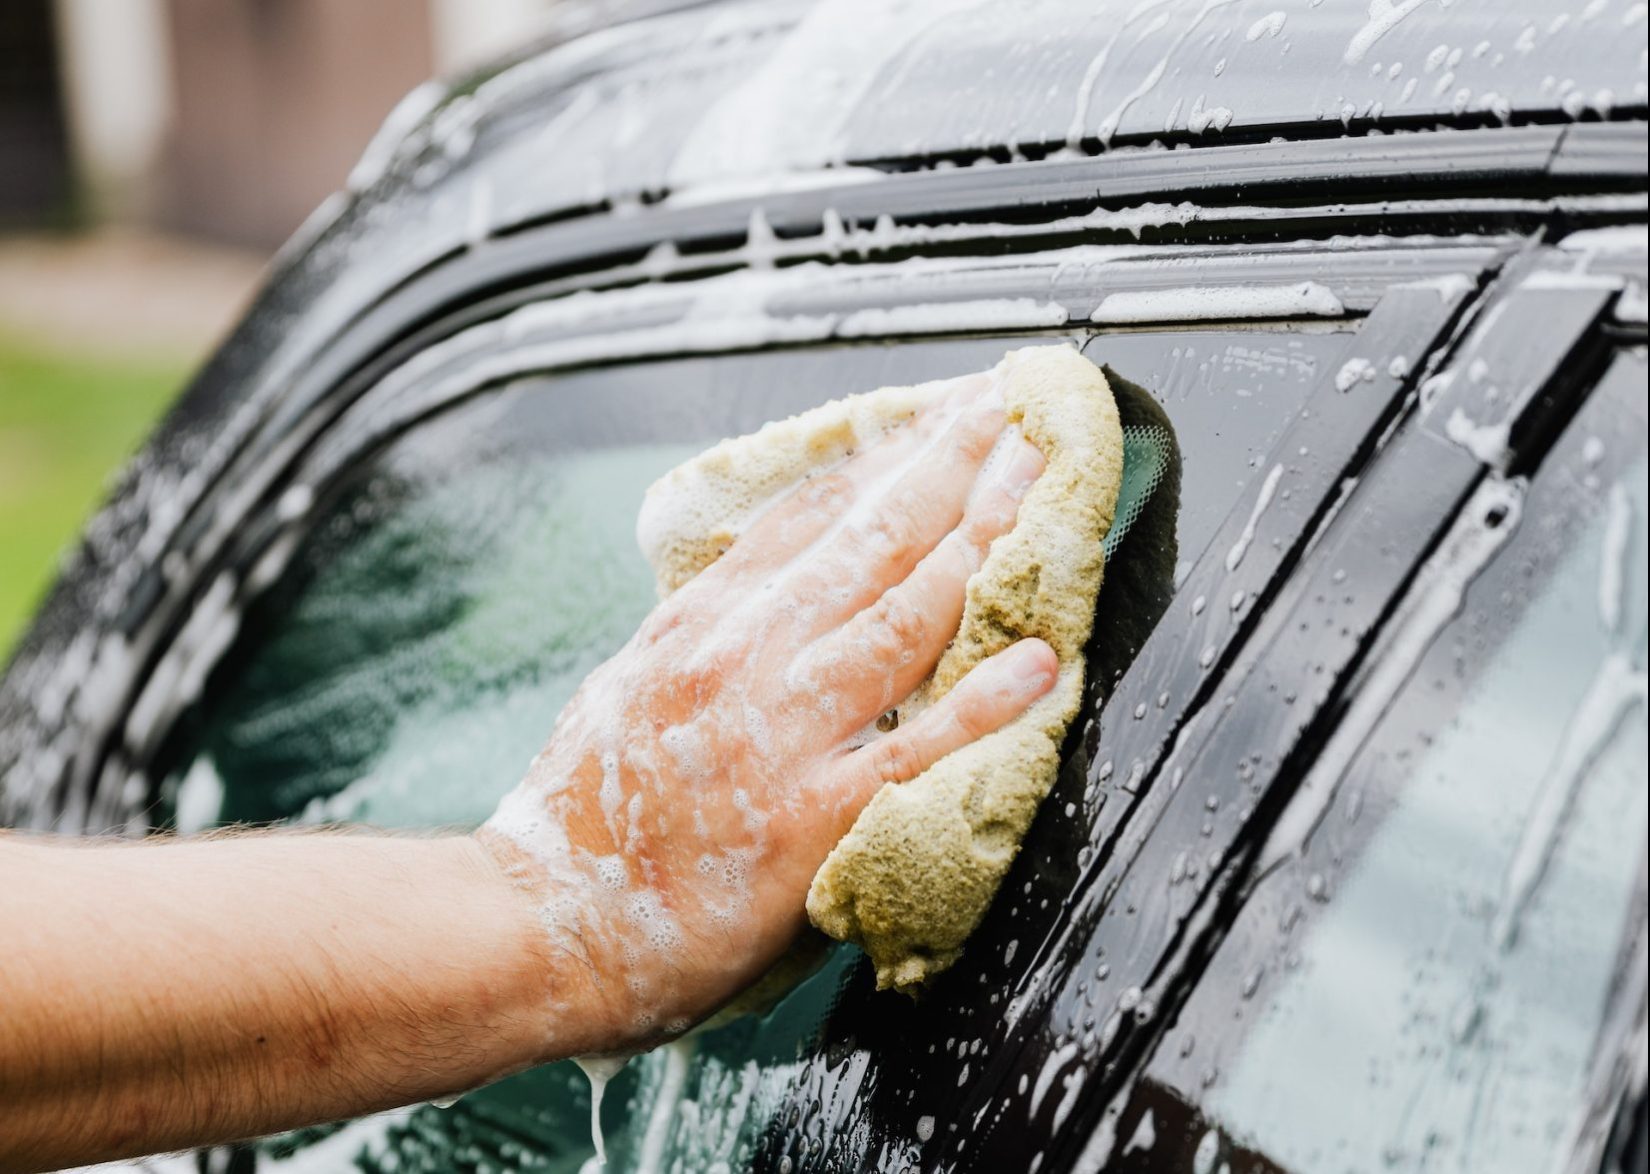 car hand wash